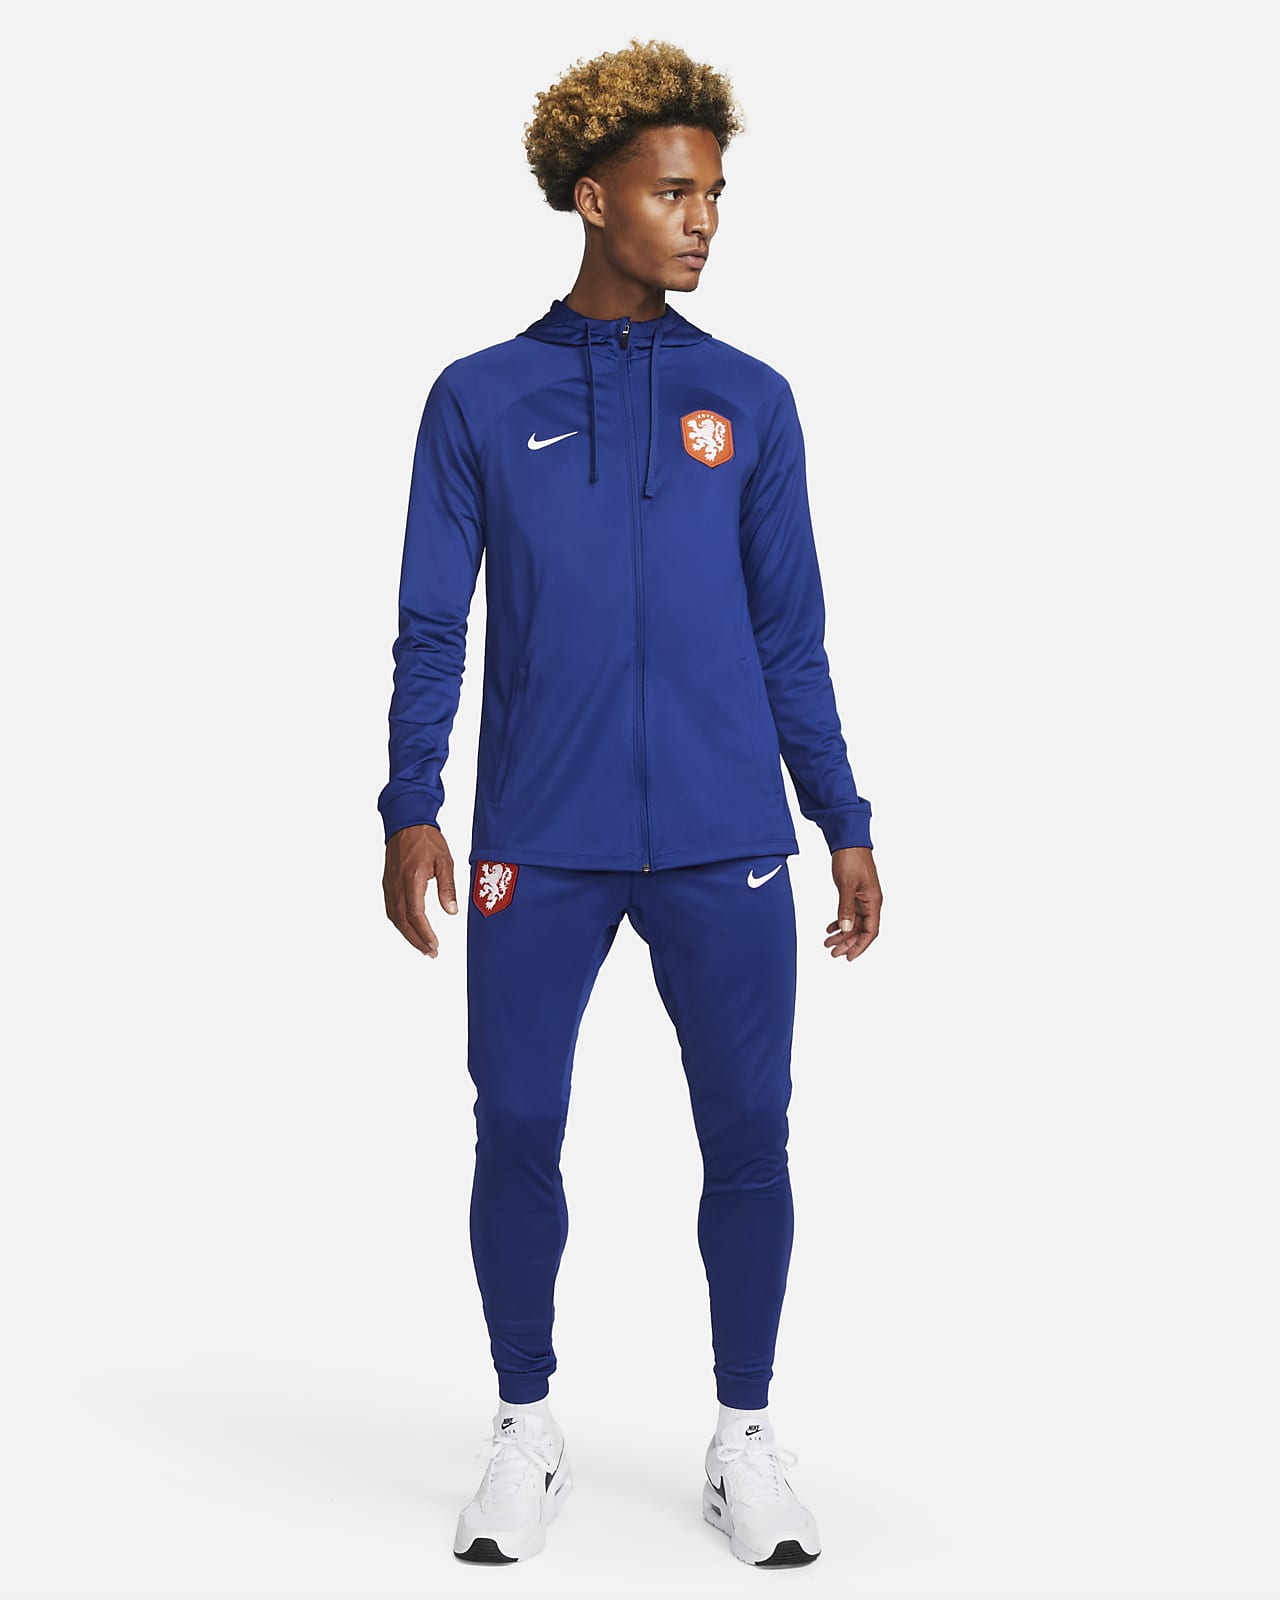 Adolescent Gezondheid Vrijgevig Niederlande Strike Nike Dri-FIT Fußball-Trainingsanzug mit Kapuze für Herren.  Nike DE